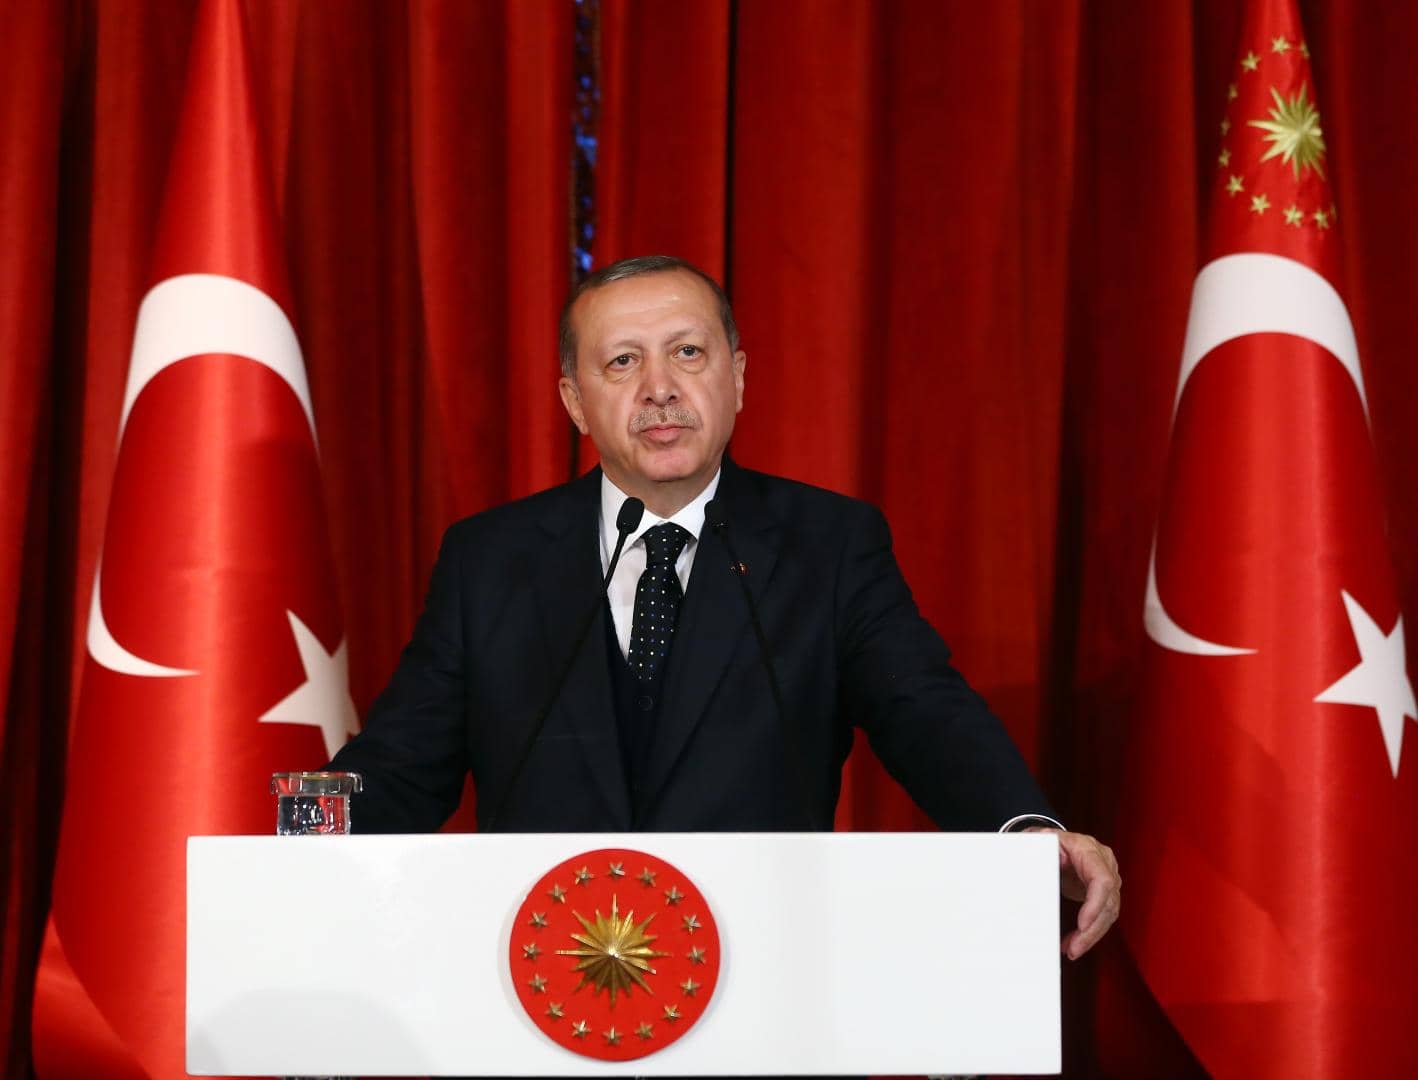 Liderul turc Recep Tayyip Erdogan a declarat că forţele armate ale Turciei nu au folosit niciodată arme chimice